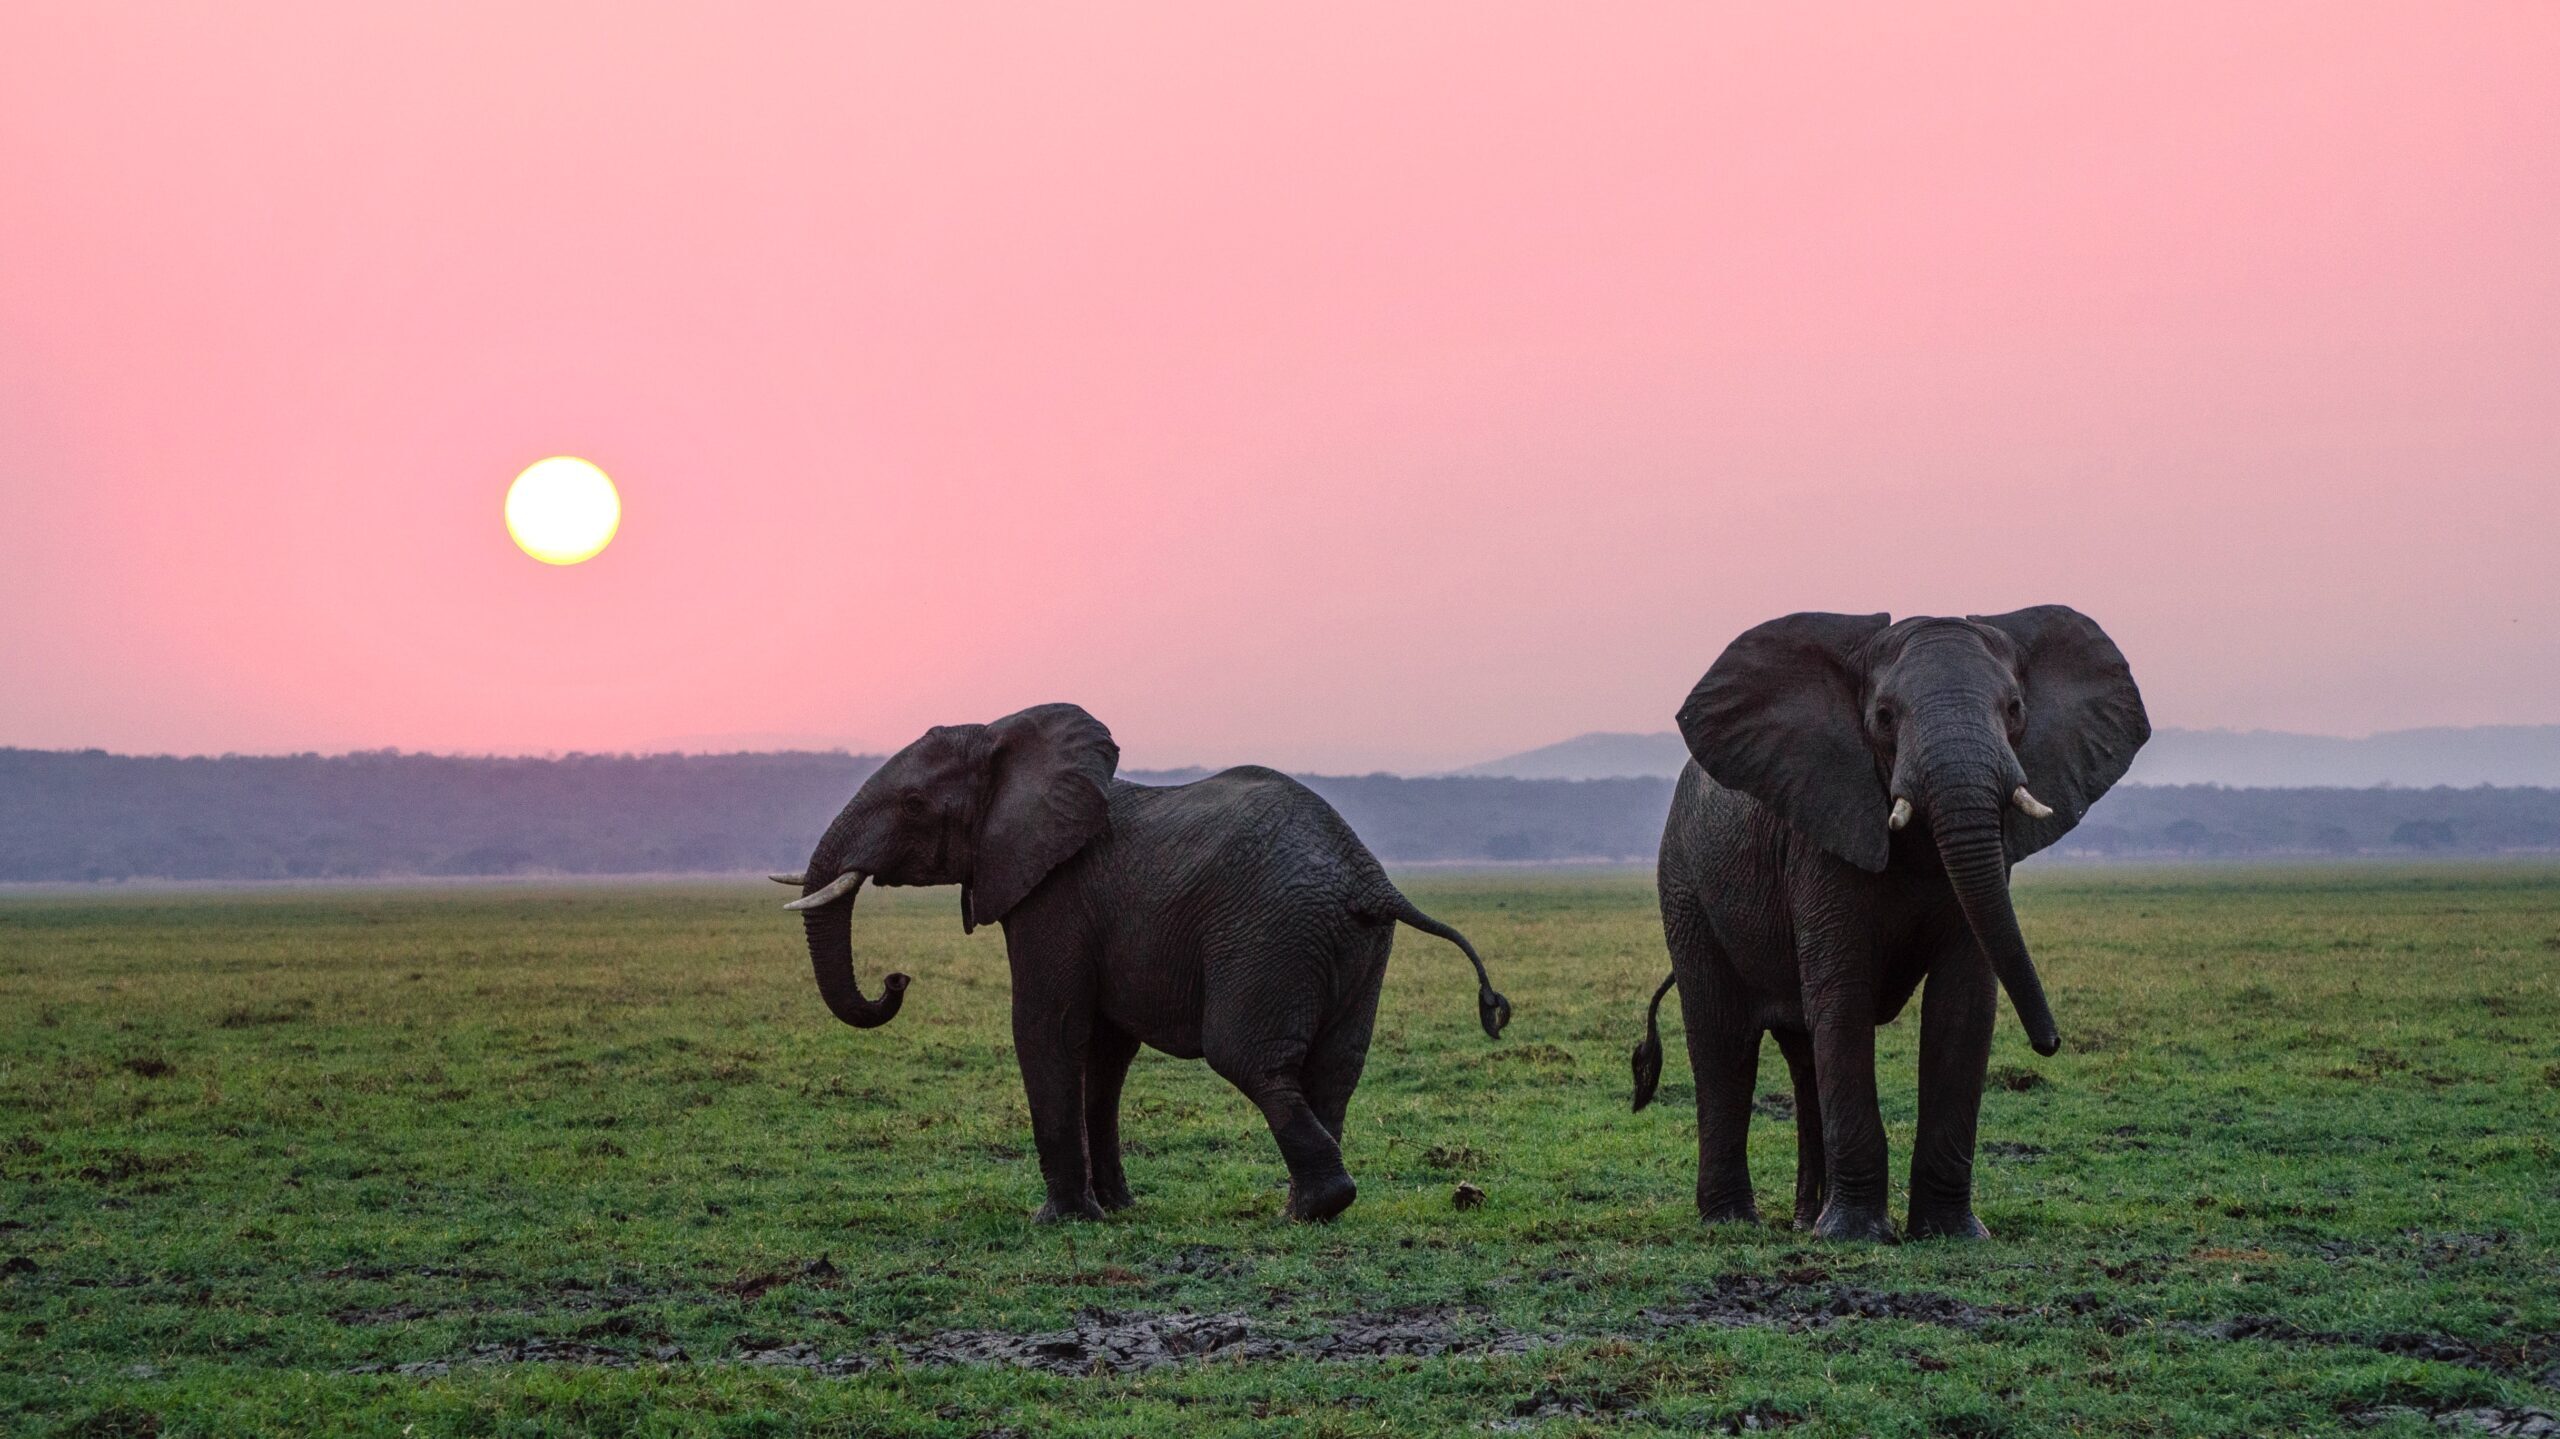 image of elephants